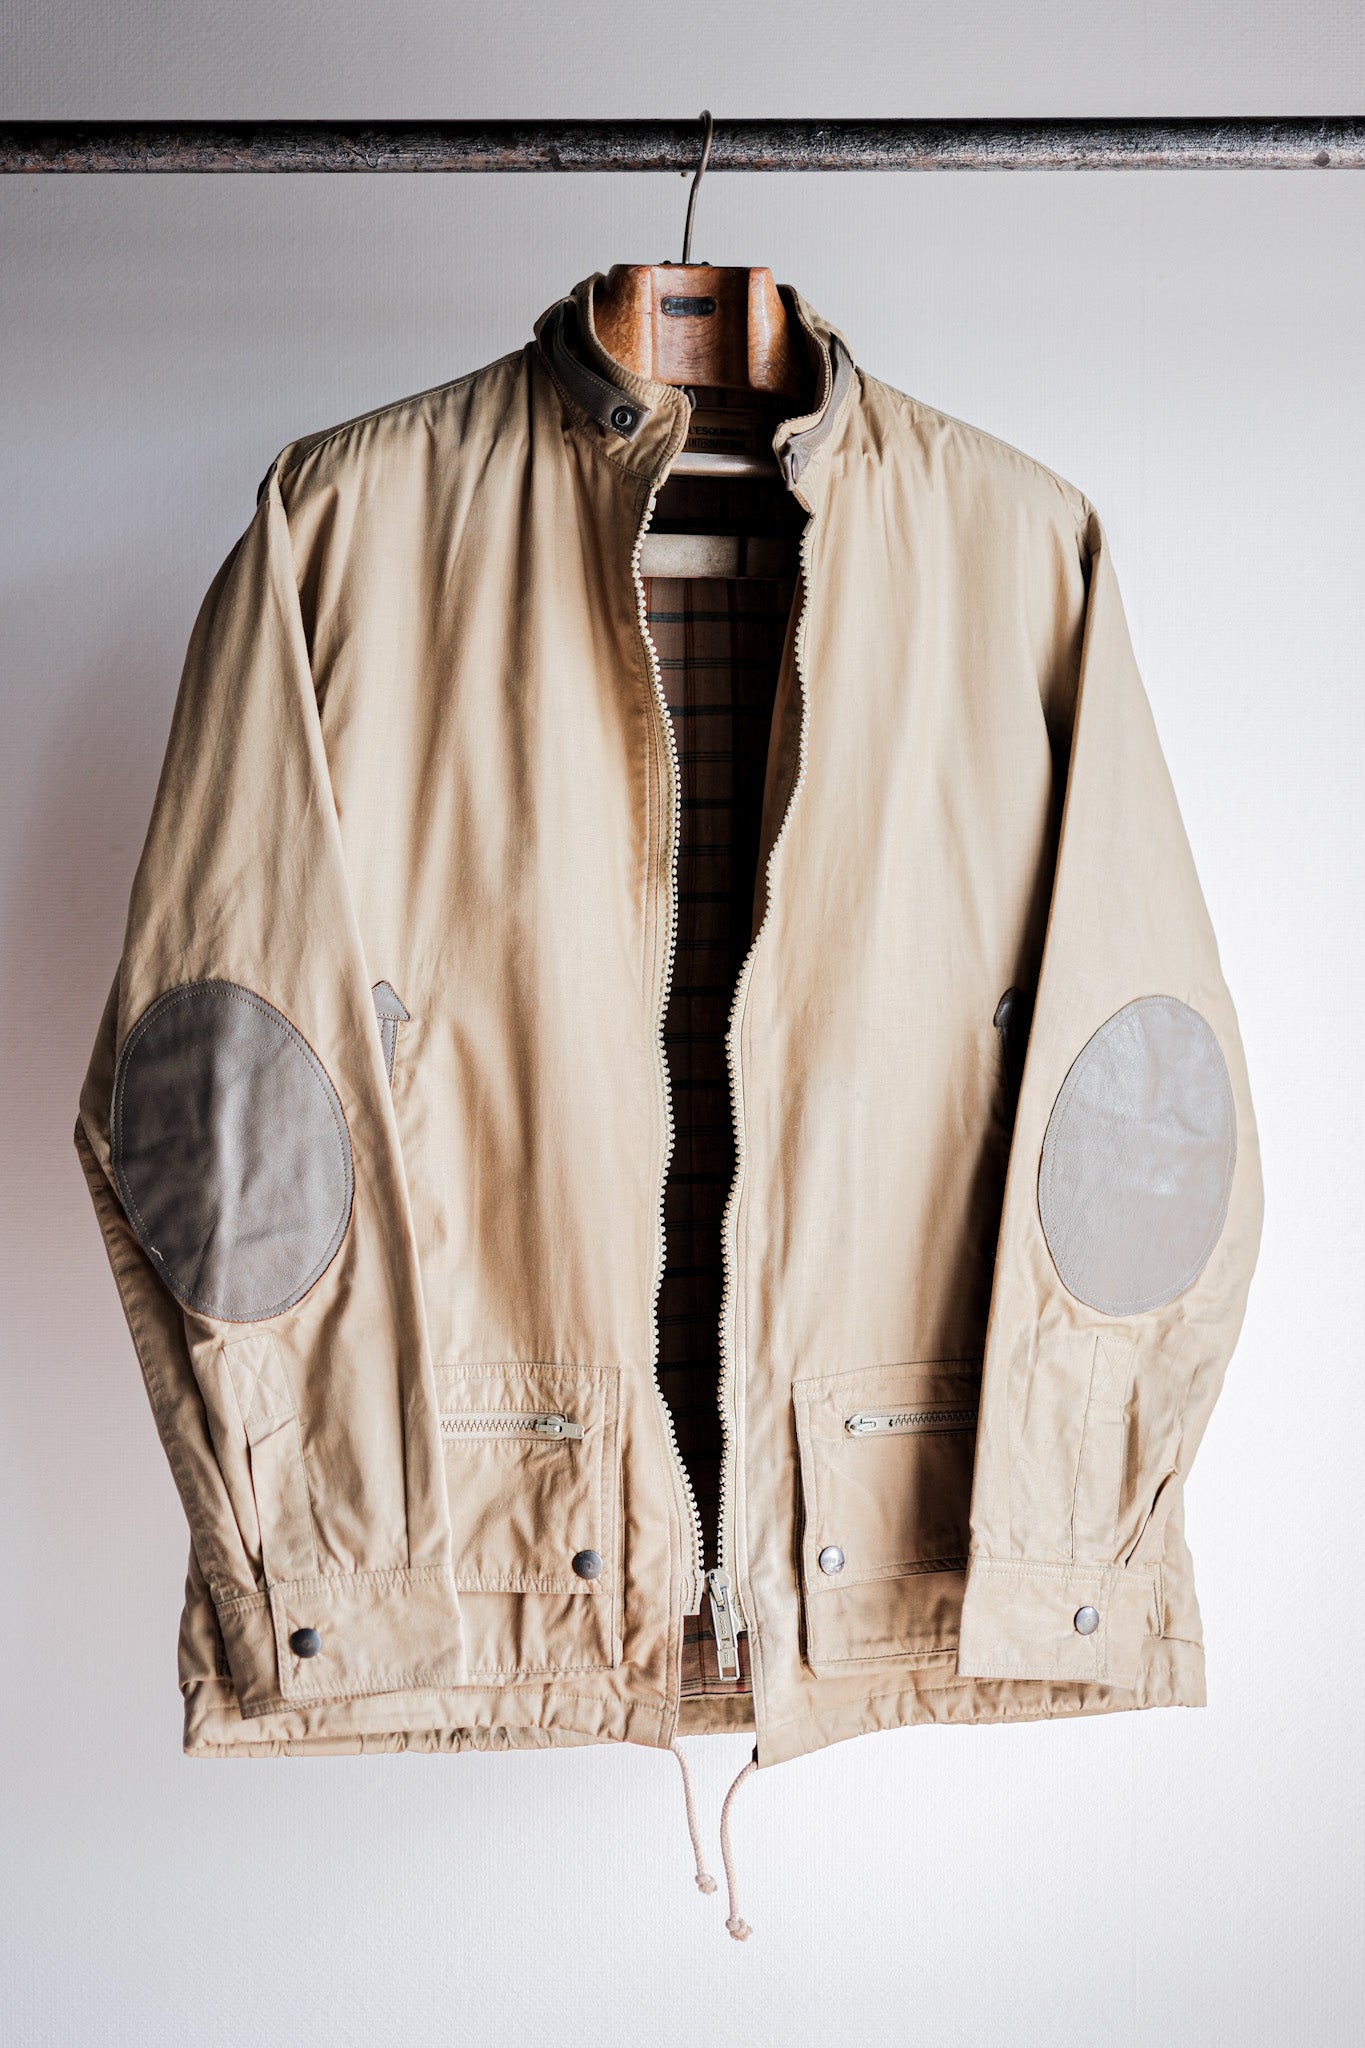 [〜80年代]法國復古狩獵外套的大小。46“ L'Esquimau International”